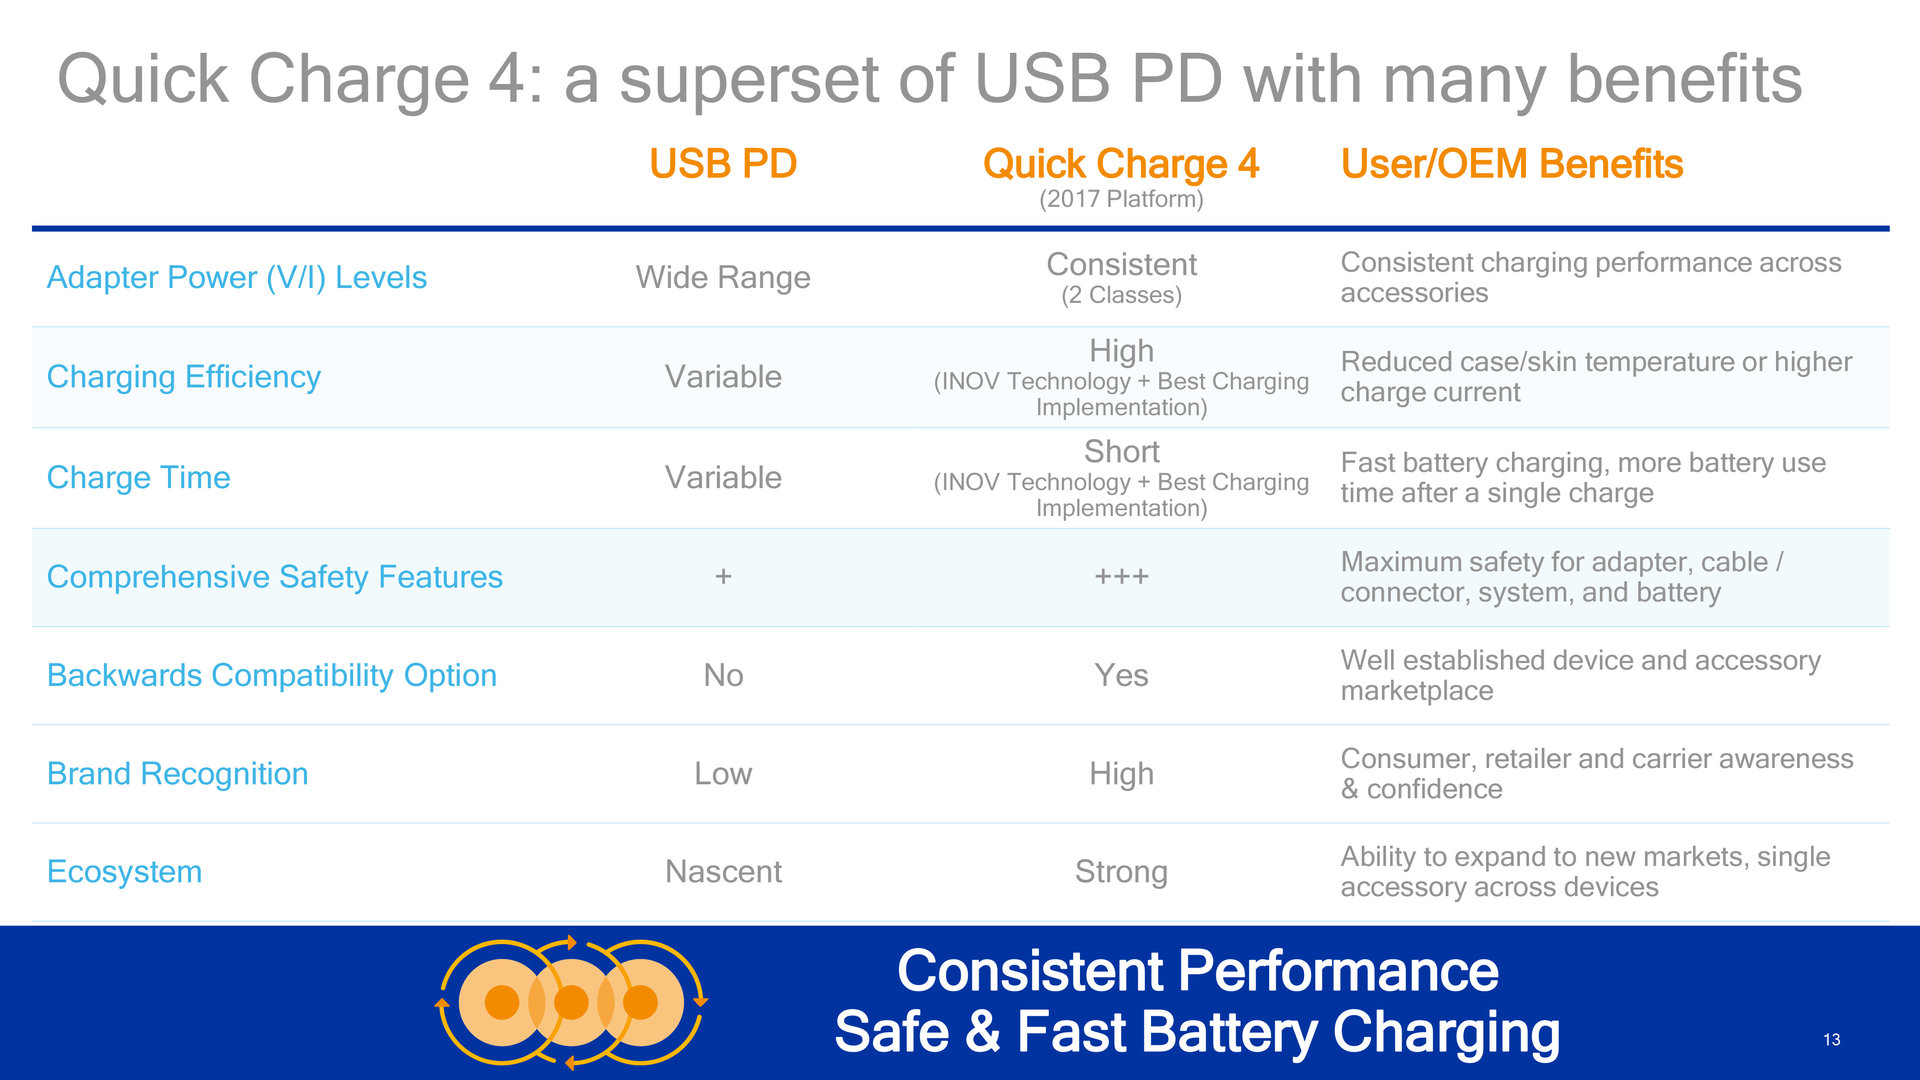 USB-PD als Grundlage für Quick Charge 4